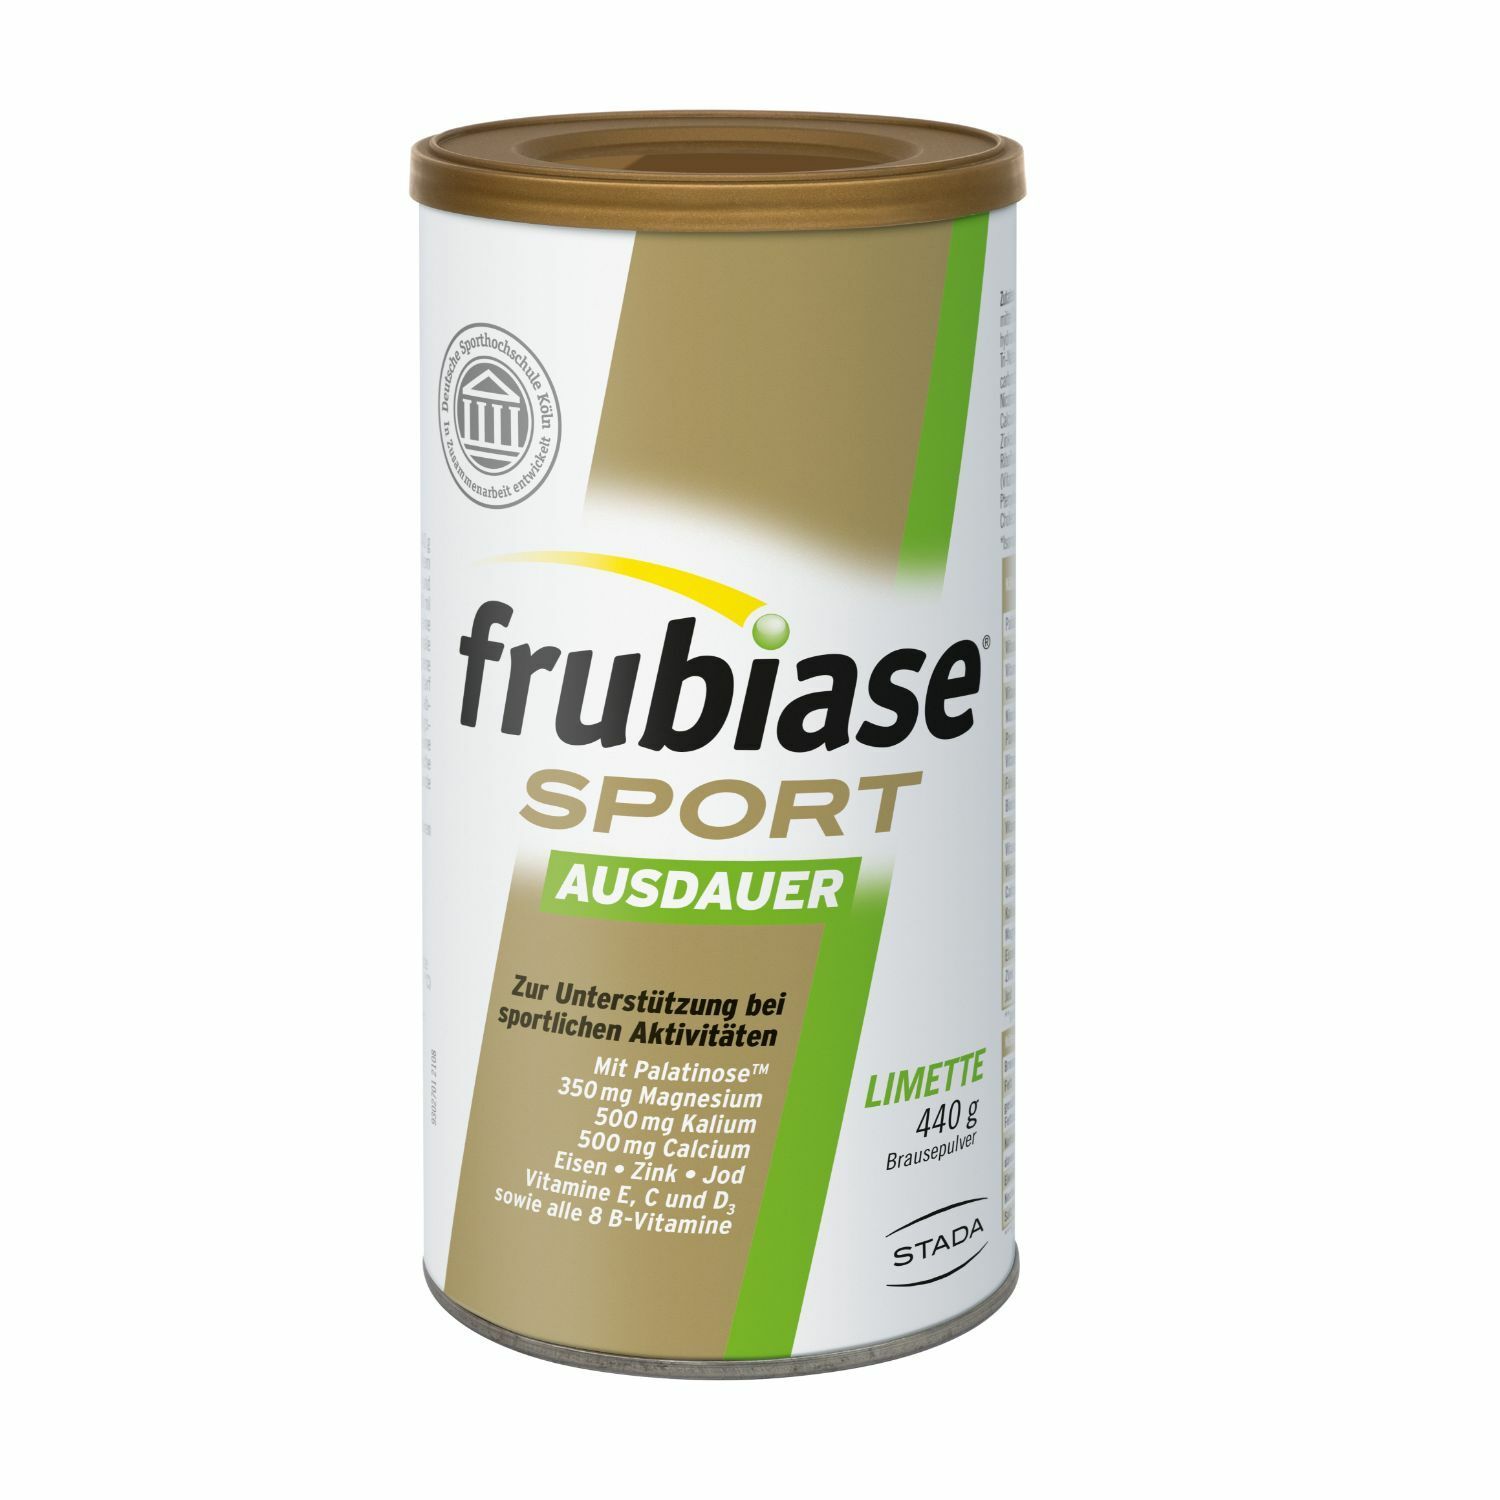 frubiase® SPORT AUSDAUER - Mit hochdosierten Mineralstoffen, Vitaminen und Spurenelementen